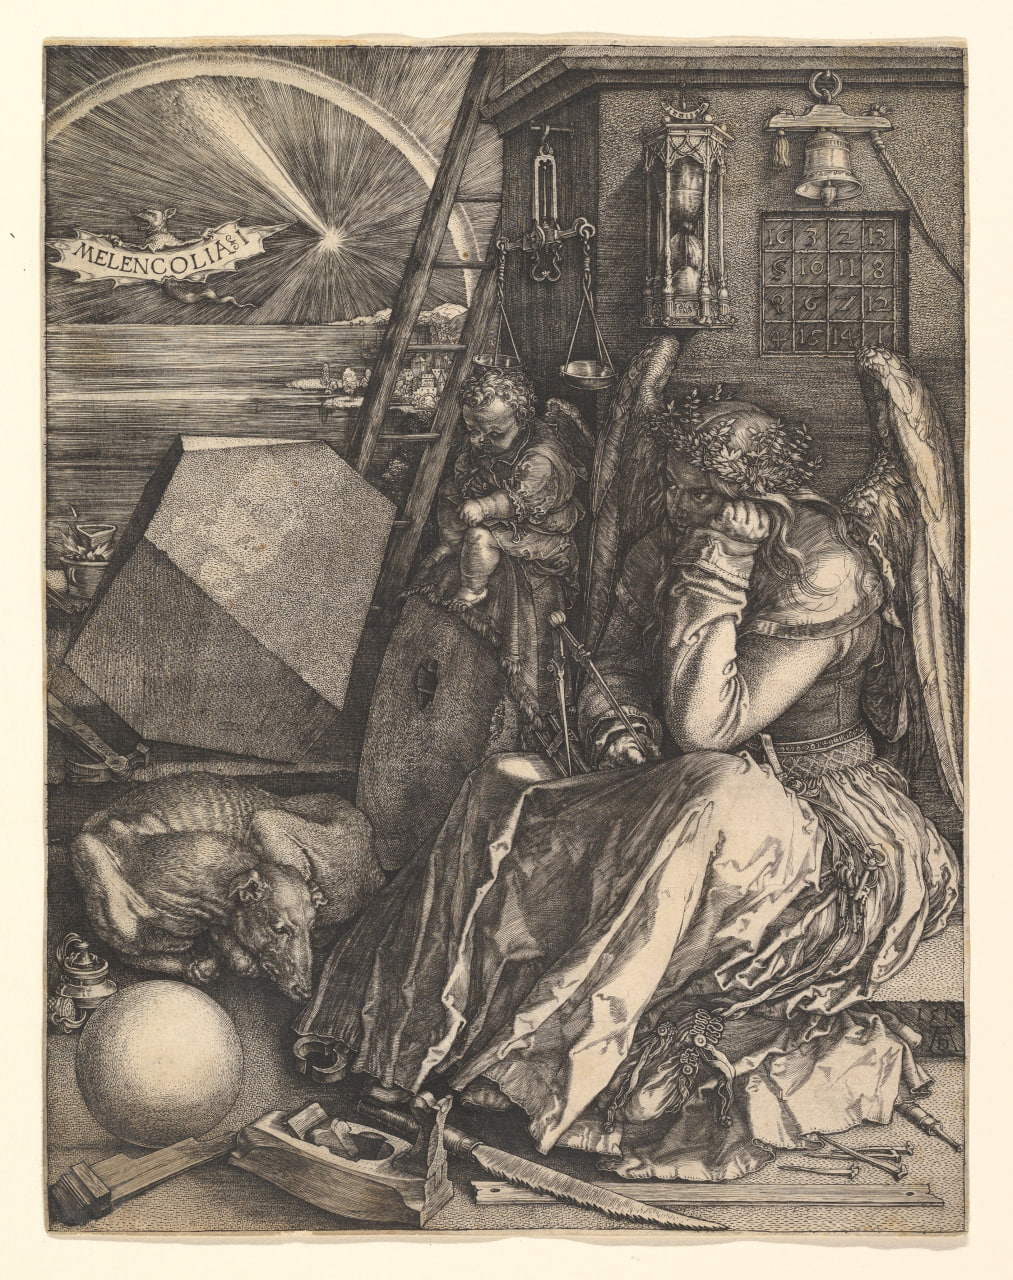 Гравюра Альбрехта Дюрера &laquo;Меланхолия I&raquo; (1514). Перед ангелом лежат предметы, символизирующие знание и творчество. По словам Юханиссон, &laquo;это образ творца, томящегося в ожидании творческого подъема&raquo;